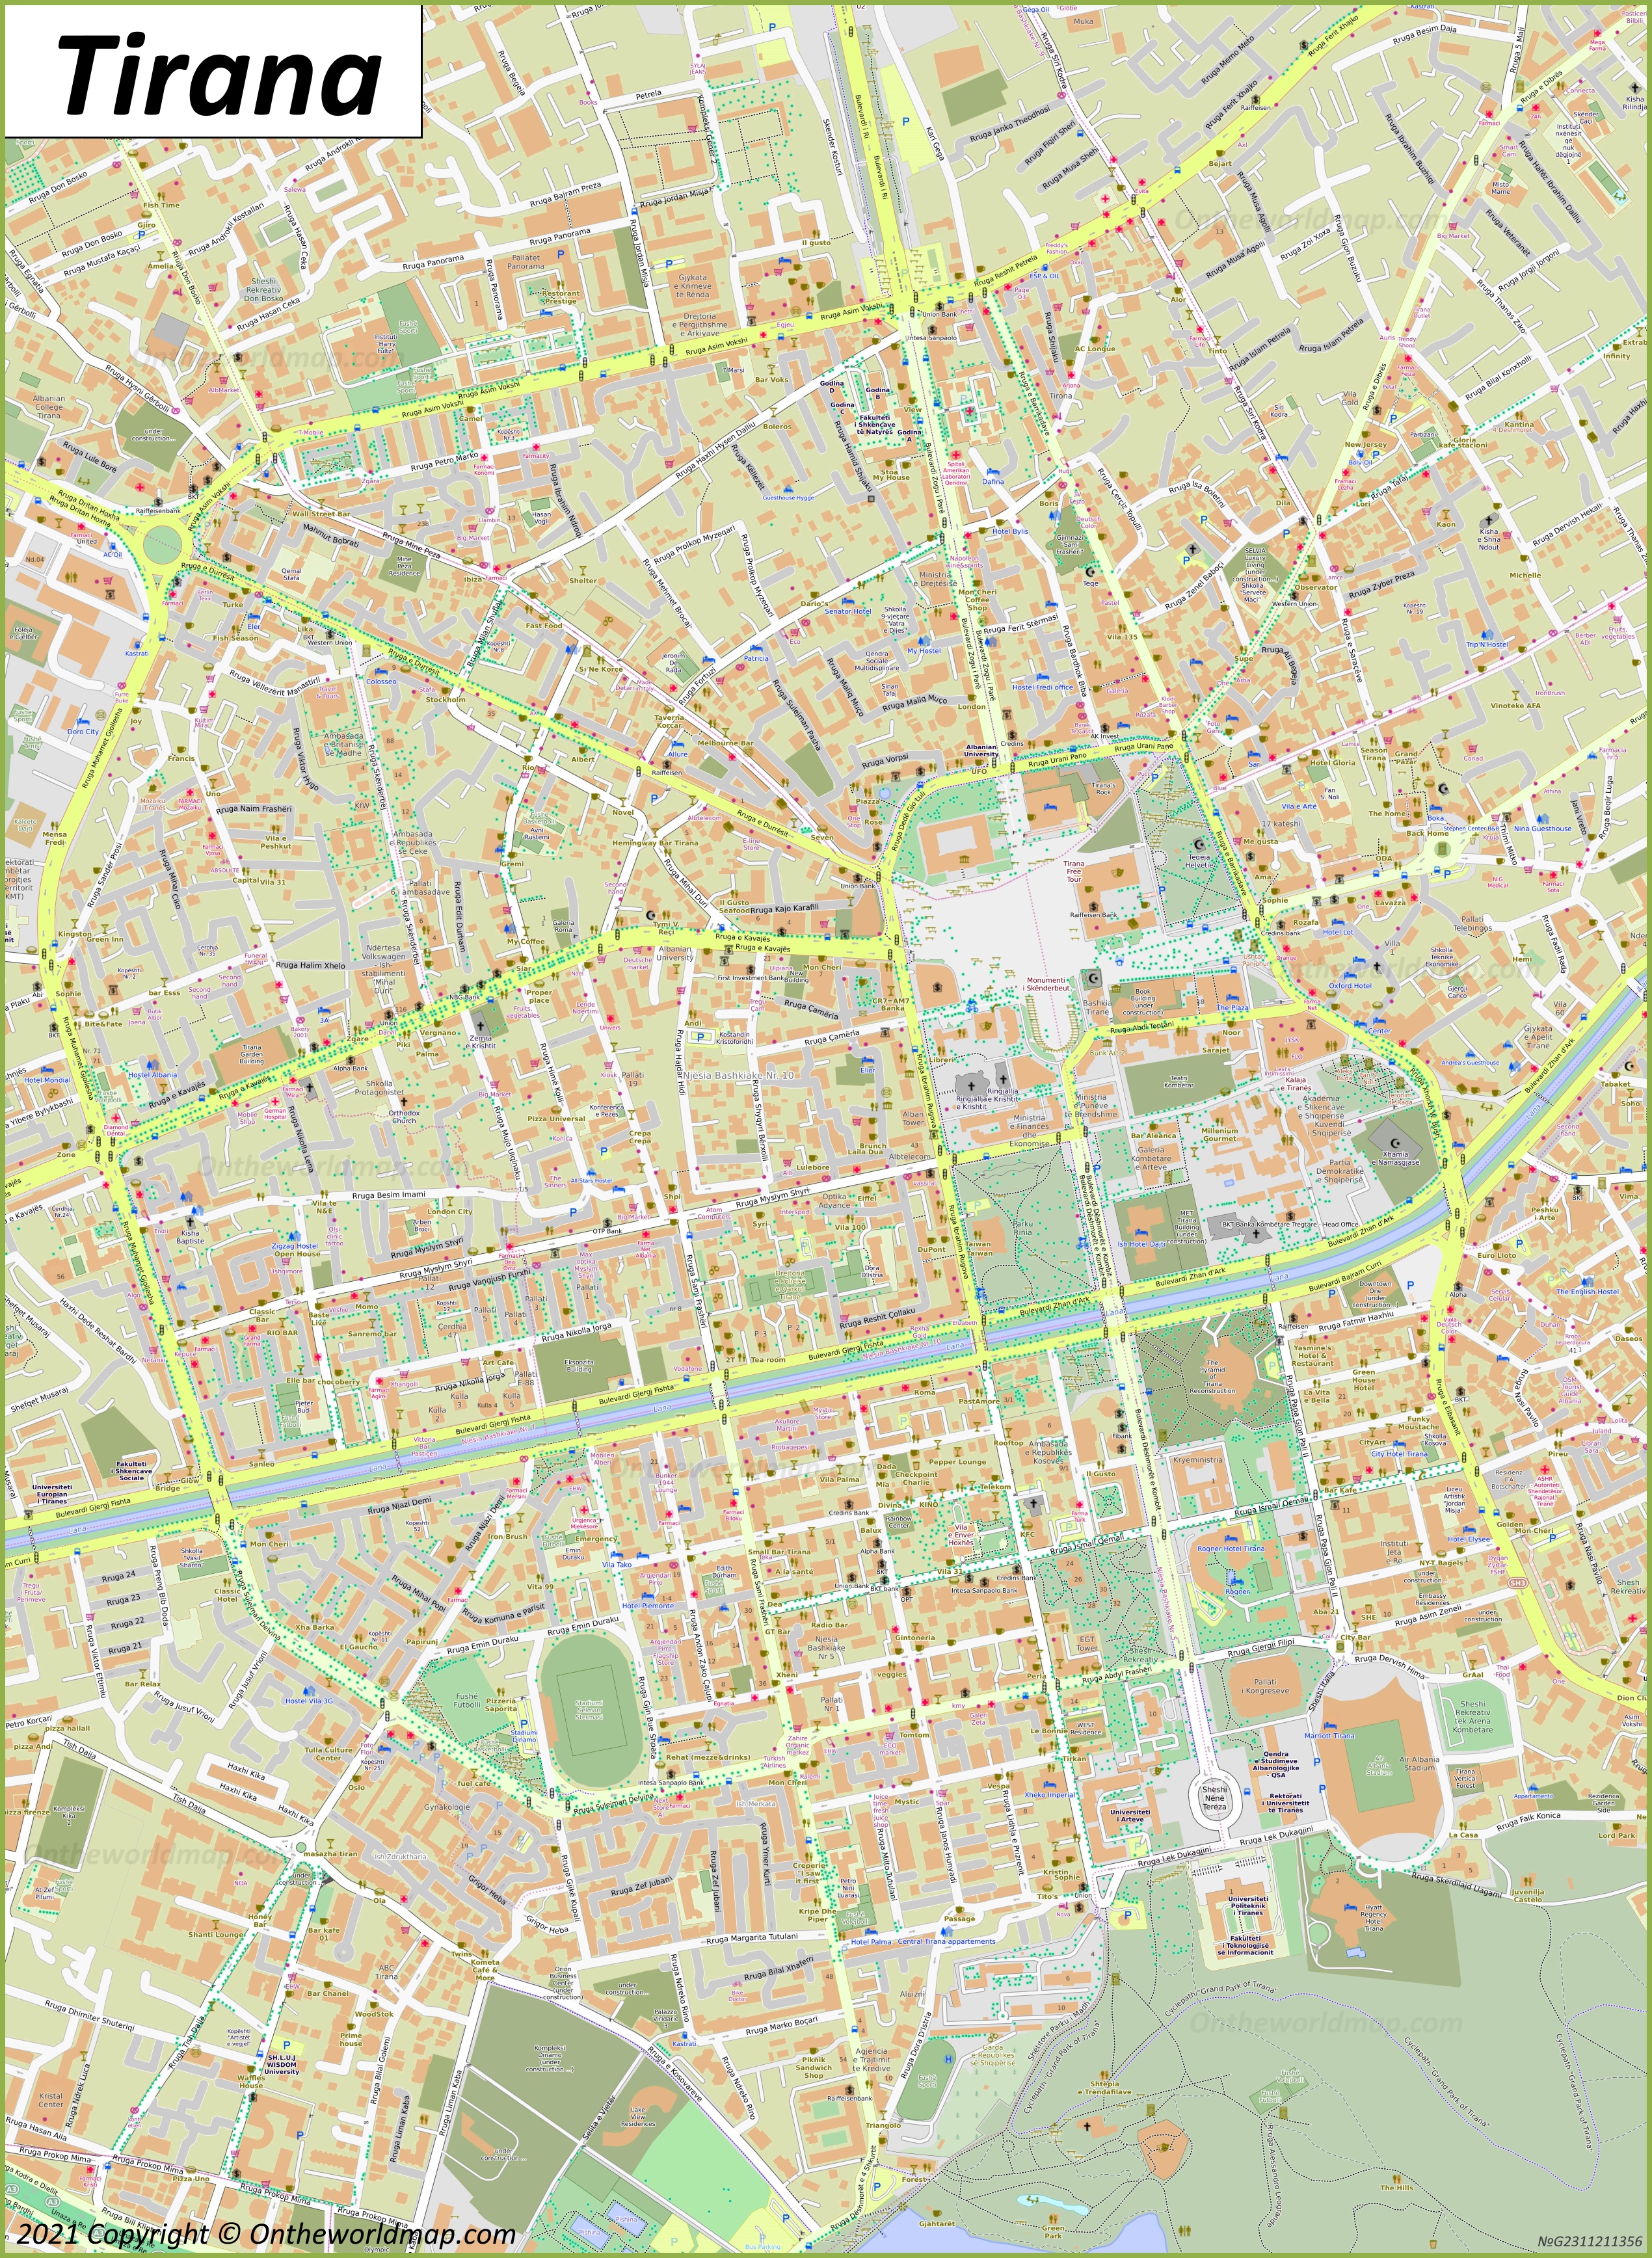 Tirana City Center Map